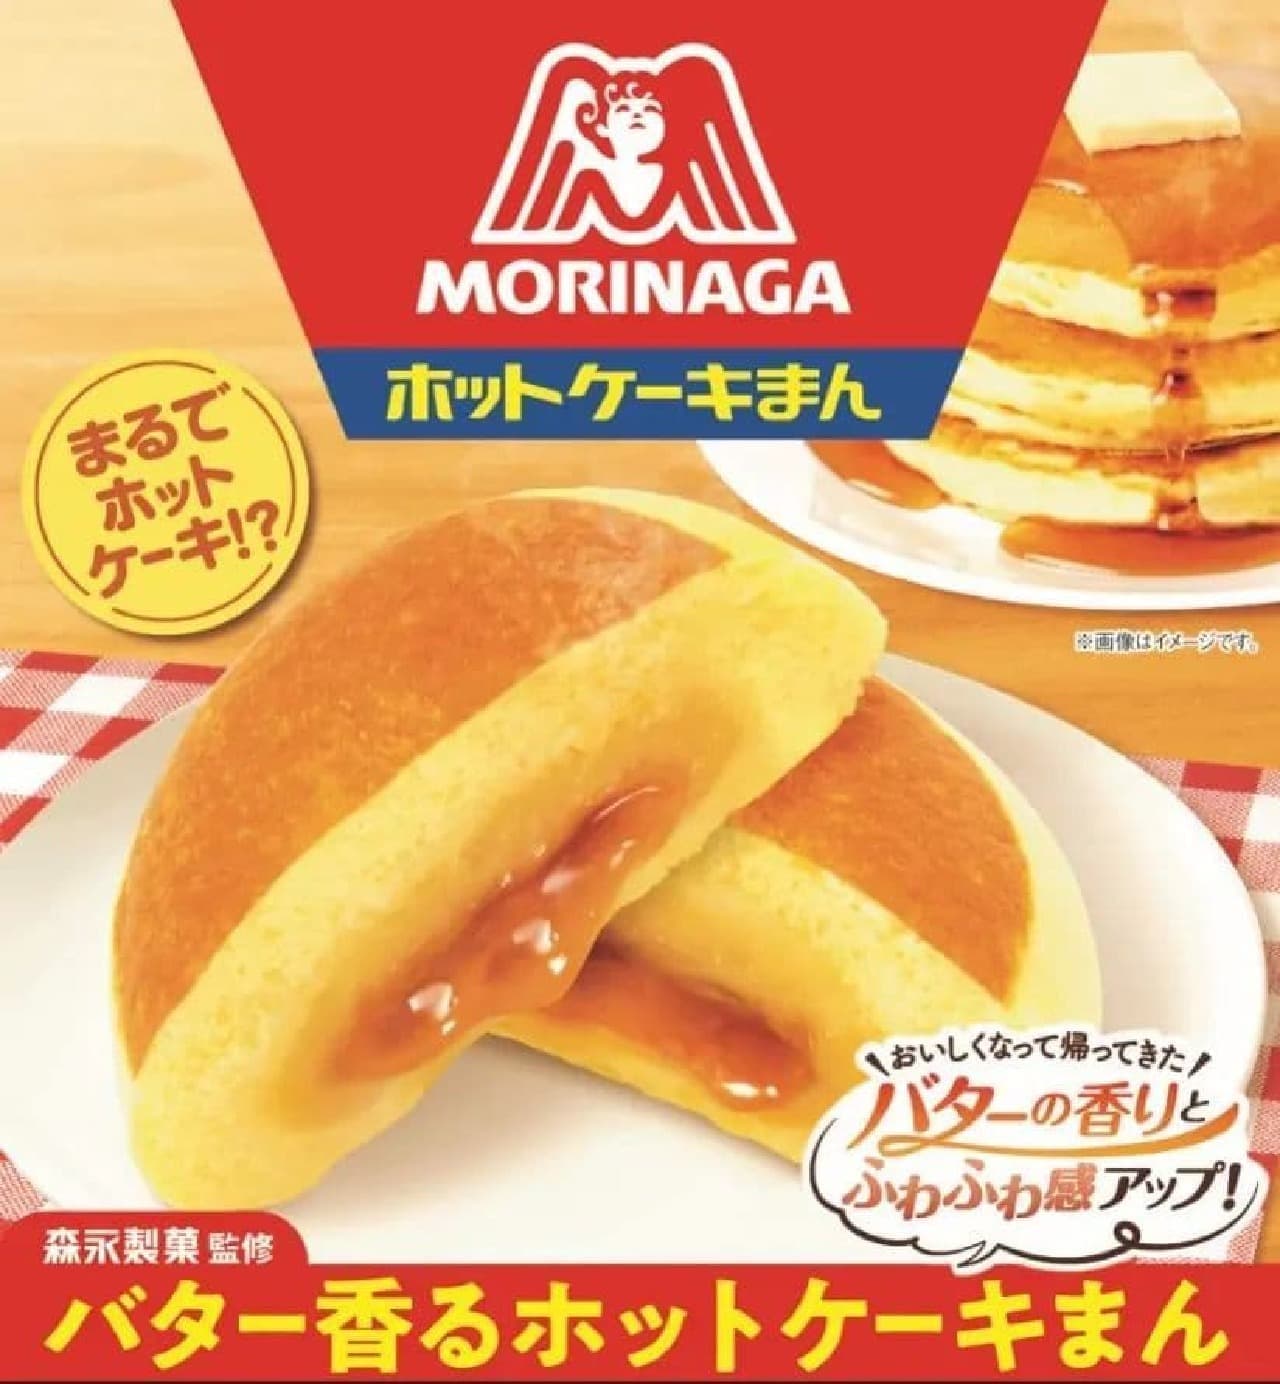 FamilyMart Morinaga supervised "Butter Scented Hot Cake Manju".